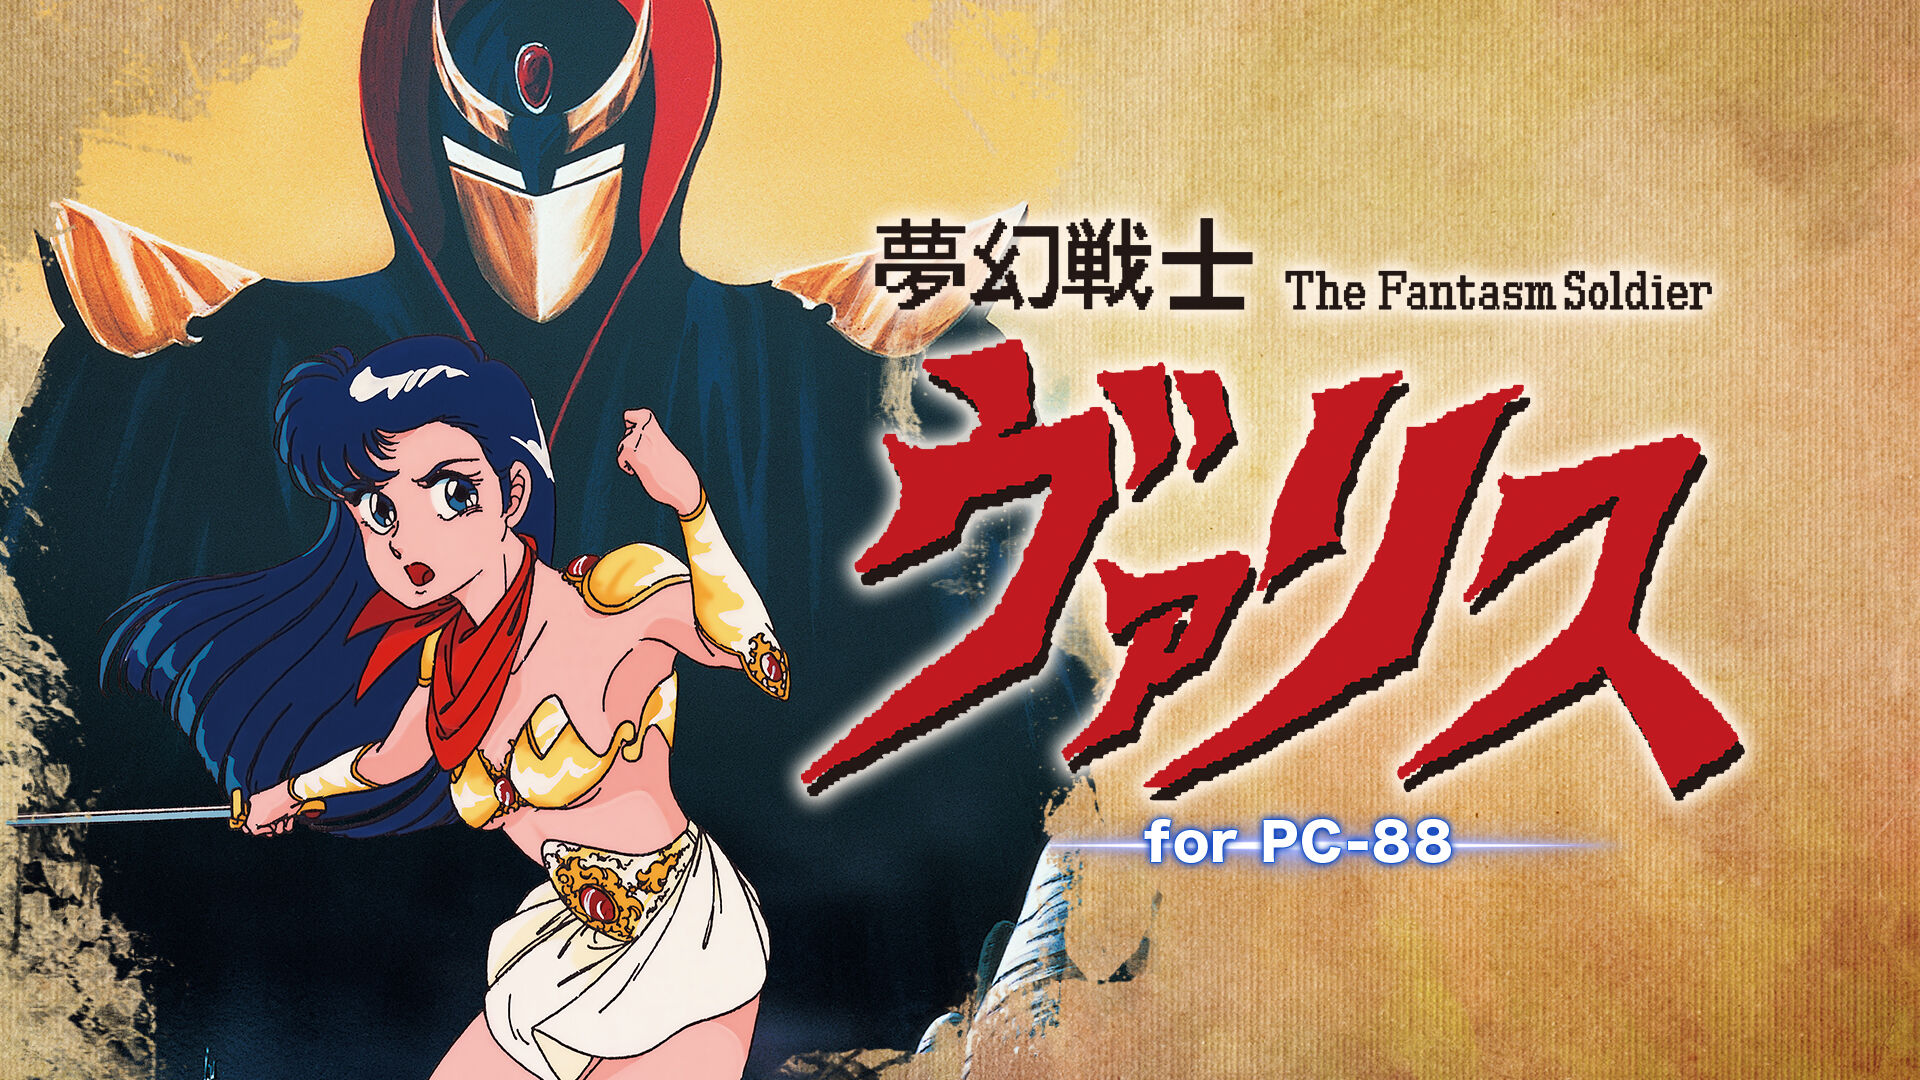 夢幻戦士ヴァリス for PC-88 ダウンロード版 | My Nintendo Store 